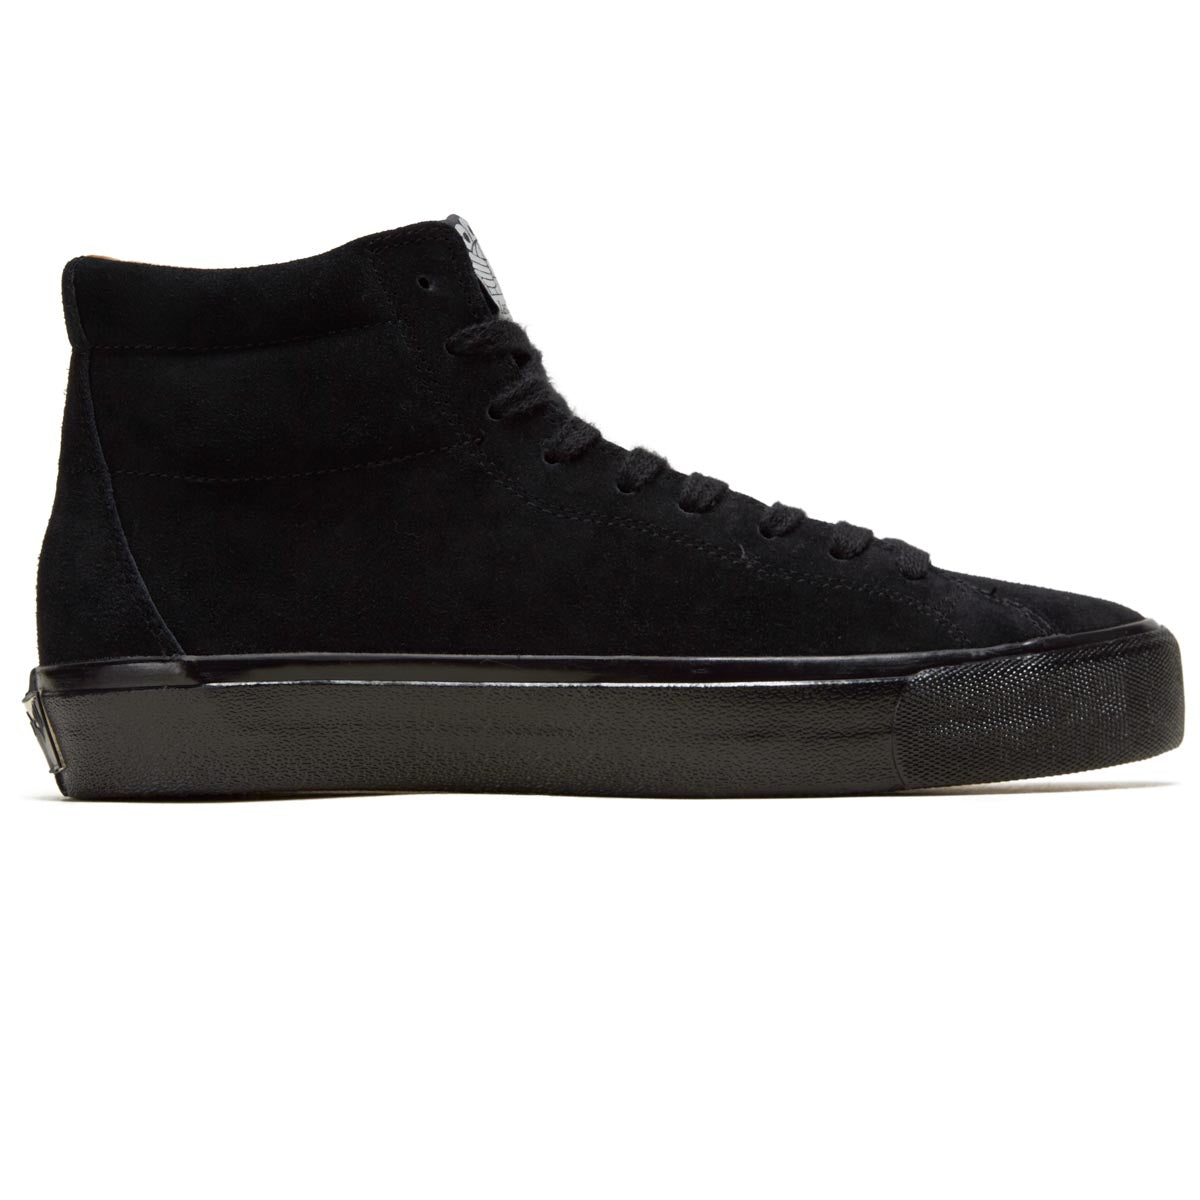 Last Resort AB VM003 Suede Hi Shoes - 3 x Black/Black image 1